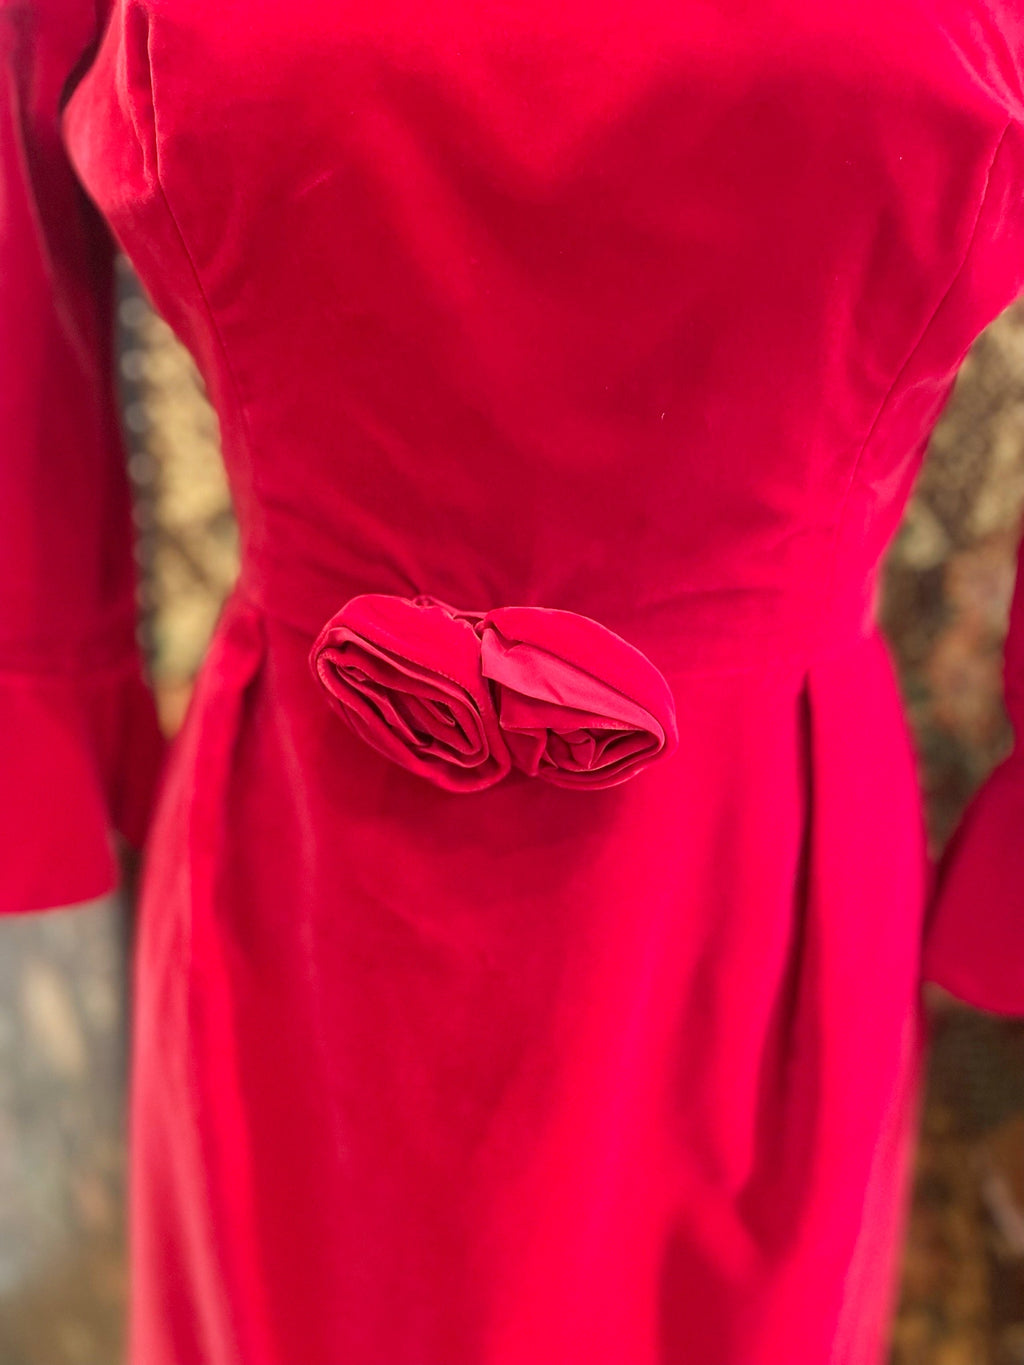 1960s Red Velvet Belled Sleeved Dress